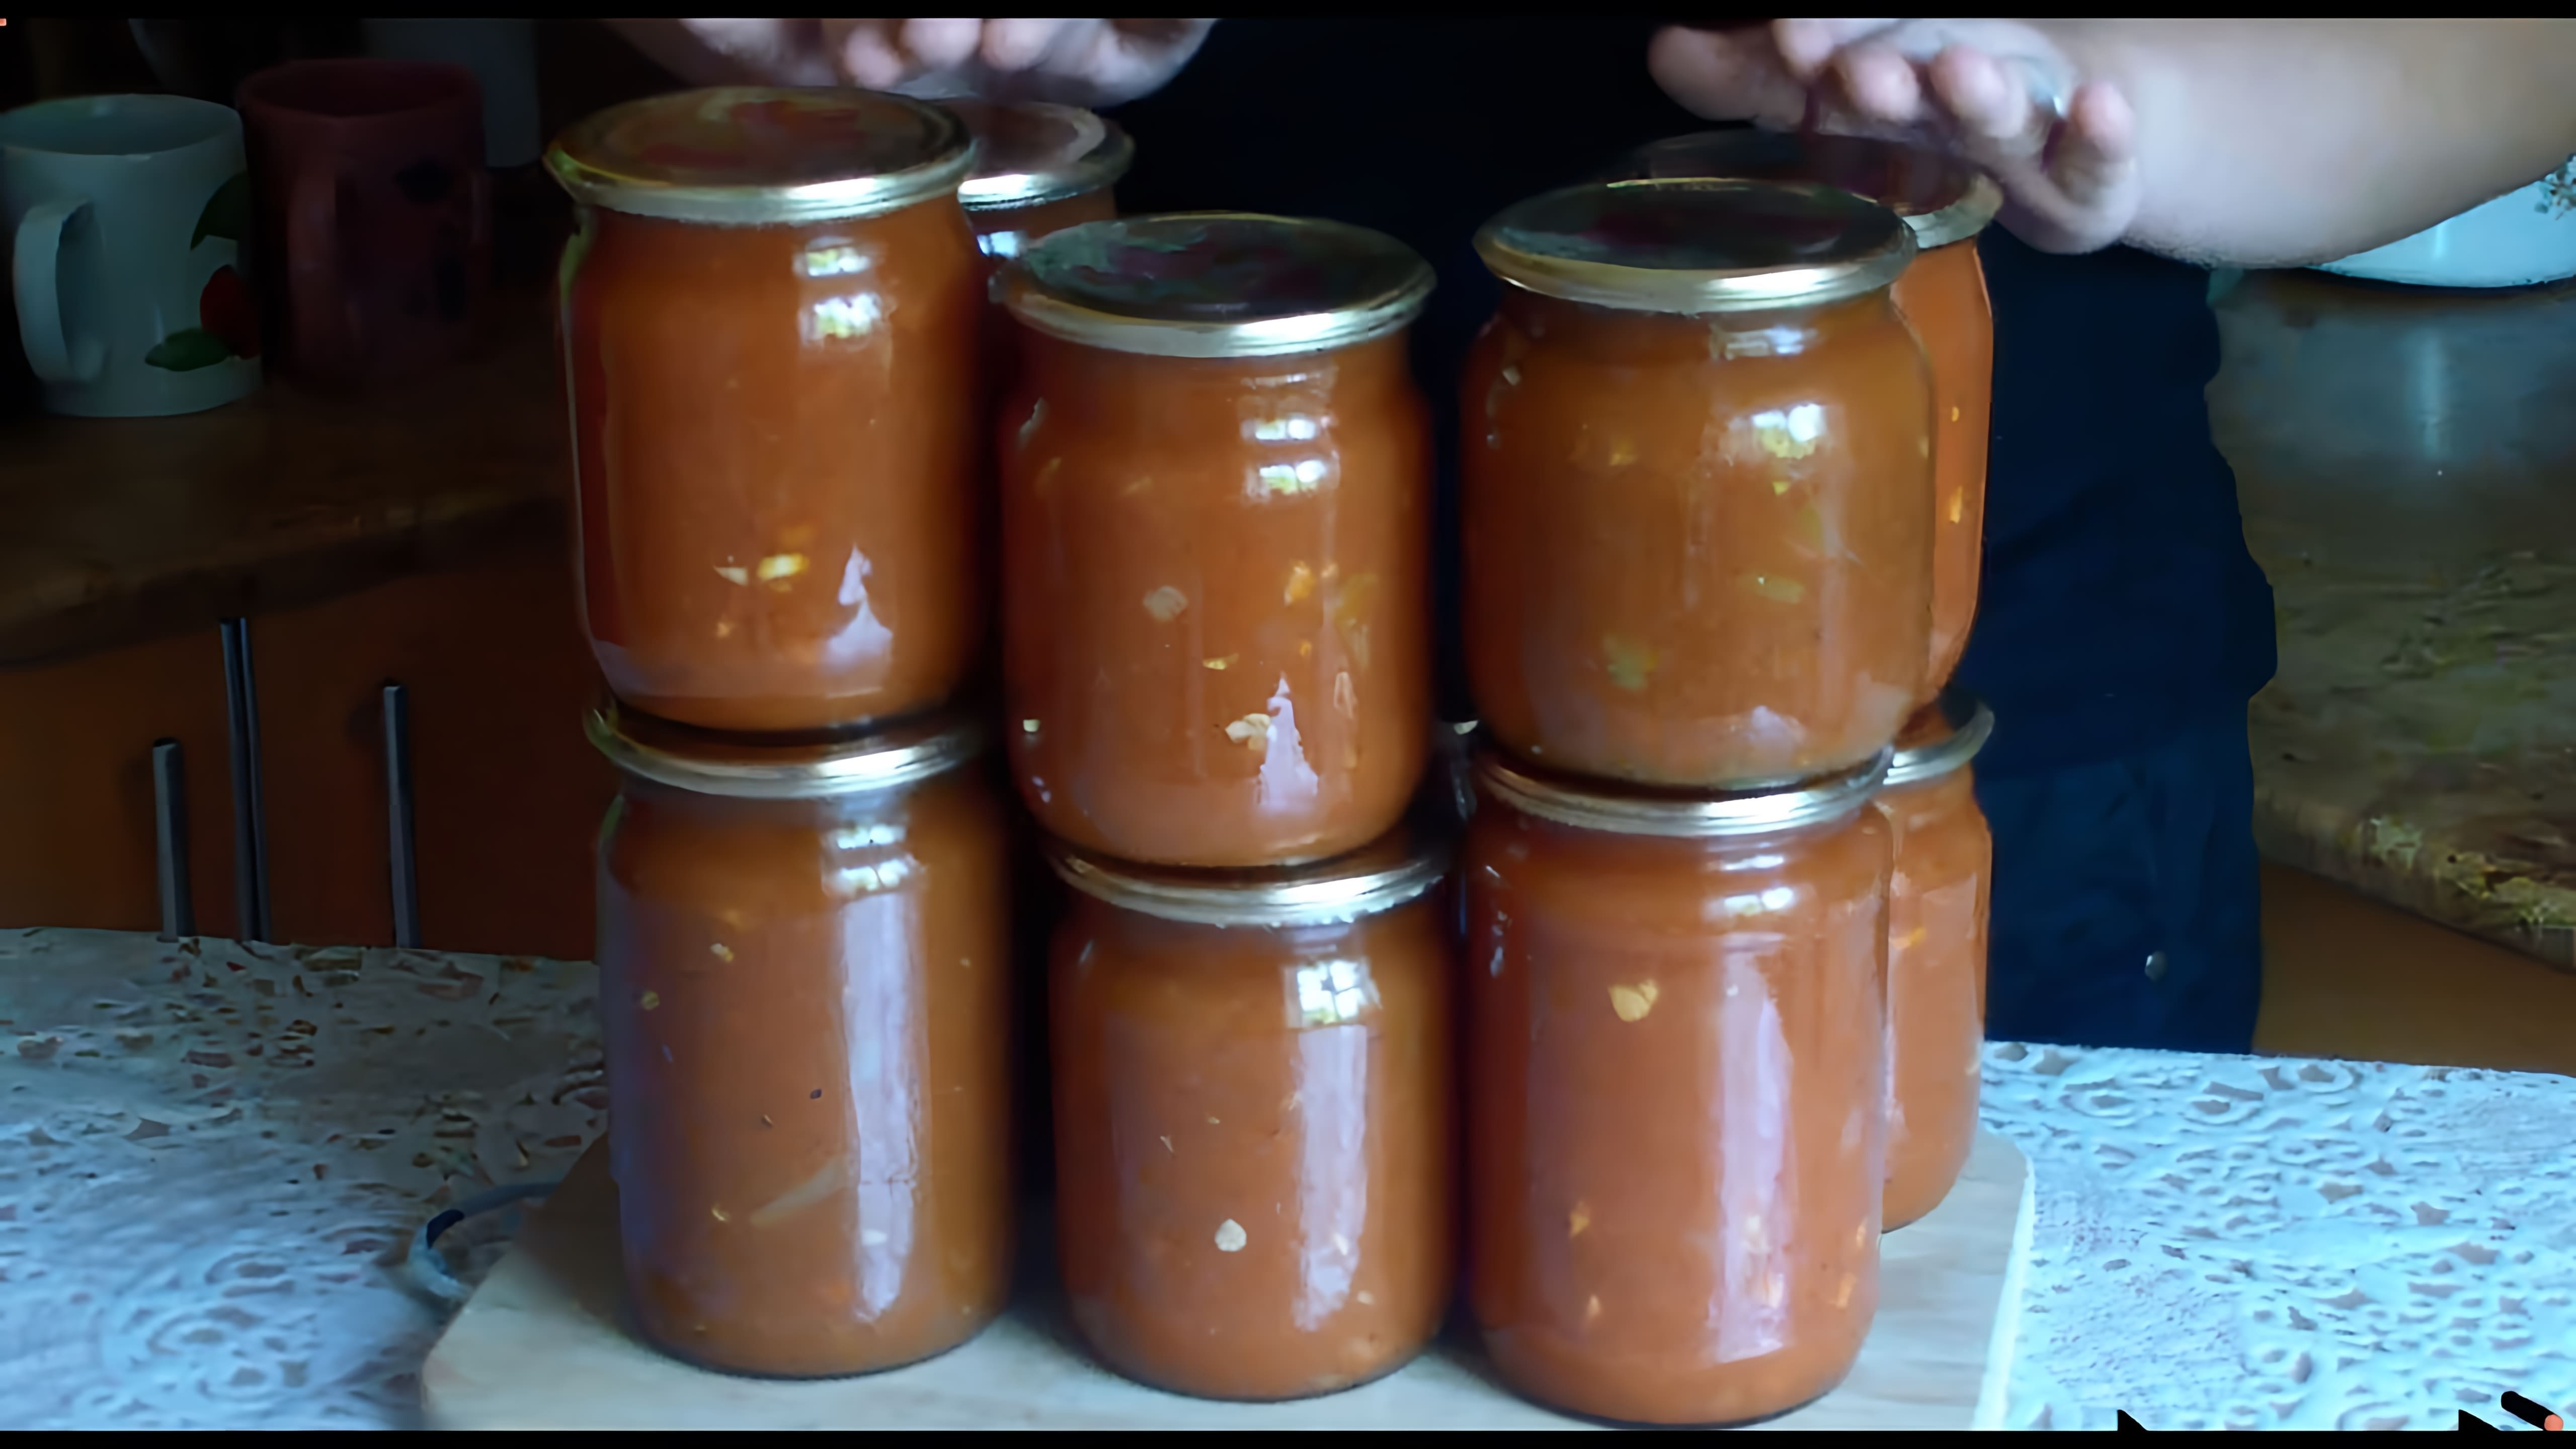 Видео рецепт томатного соуса под названием "Кубанский", который описывается как очень вкусный и простой в приготовлении